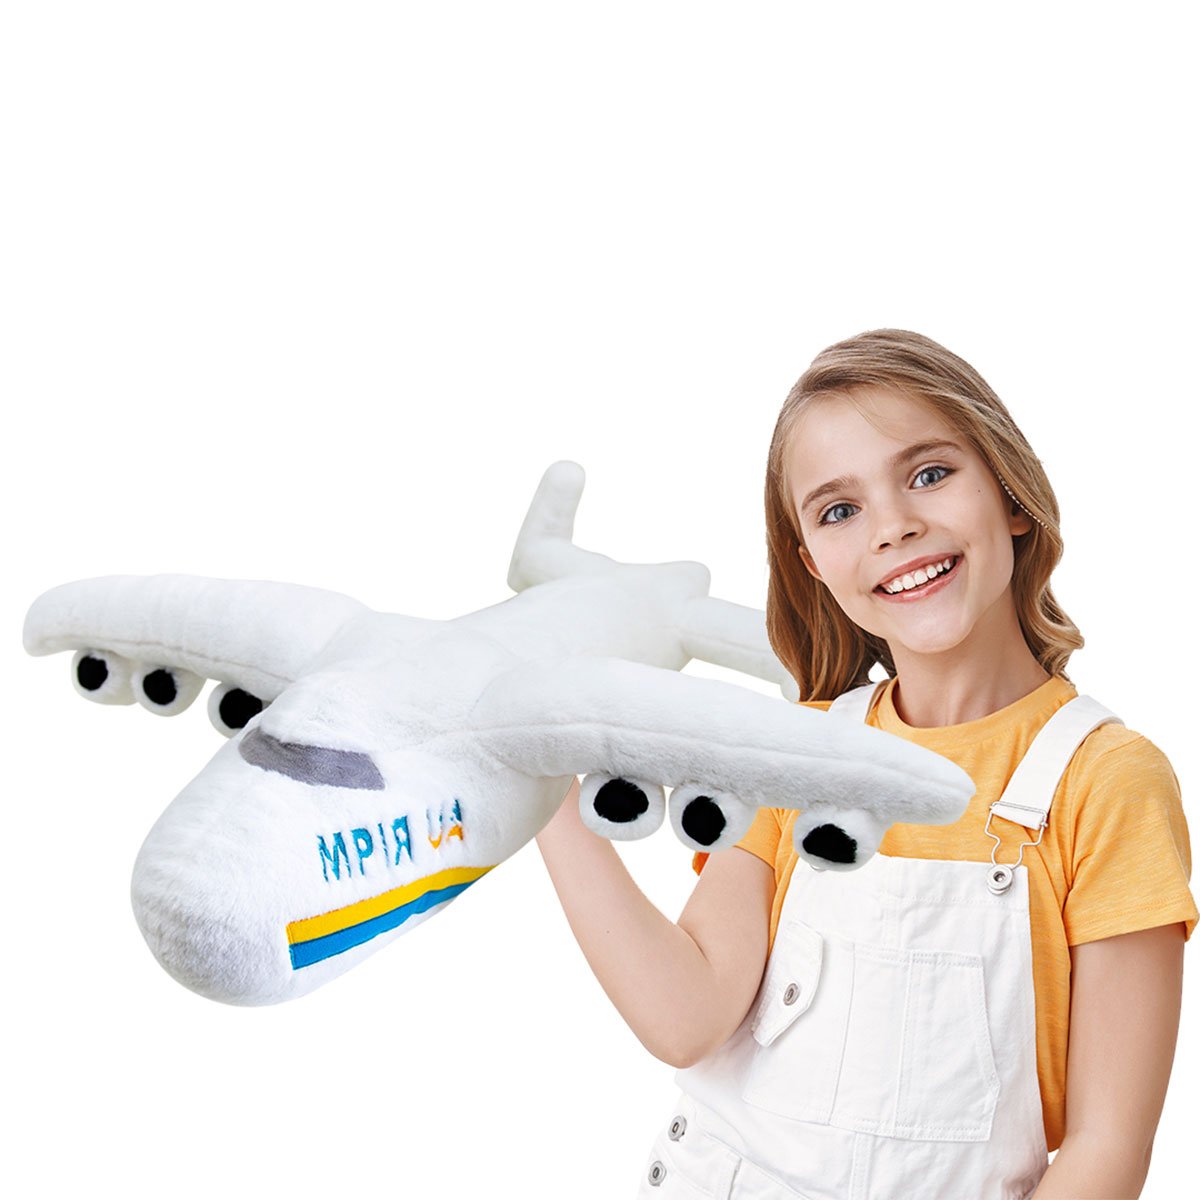 М’яка іграшка Копиця Все буде Україна Літак Мрія 2, 66 см (00970-52) - фото 5